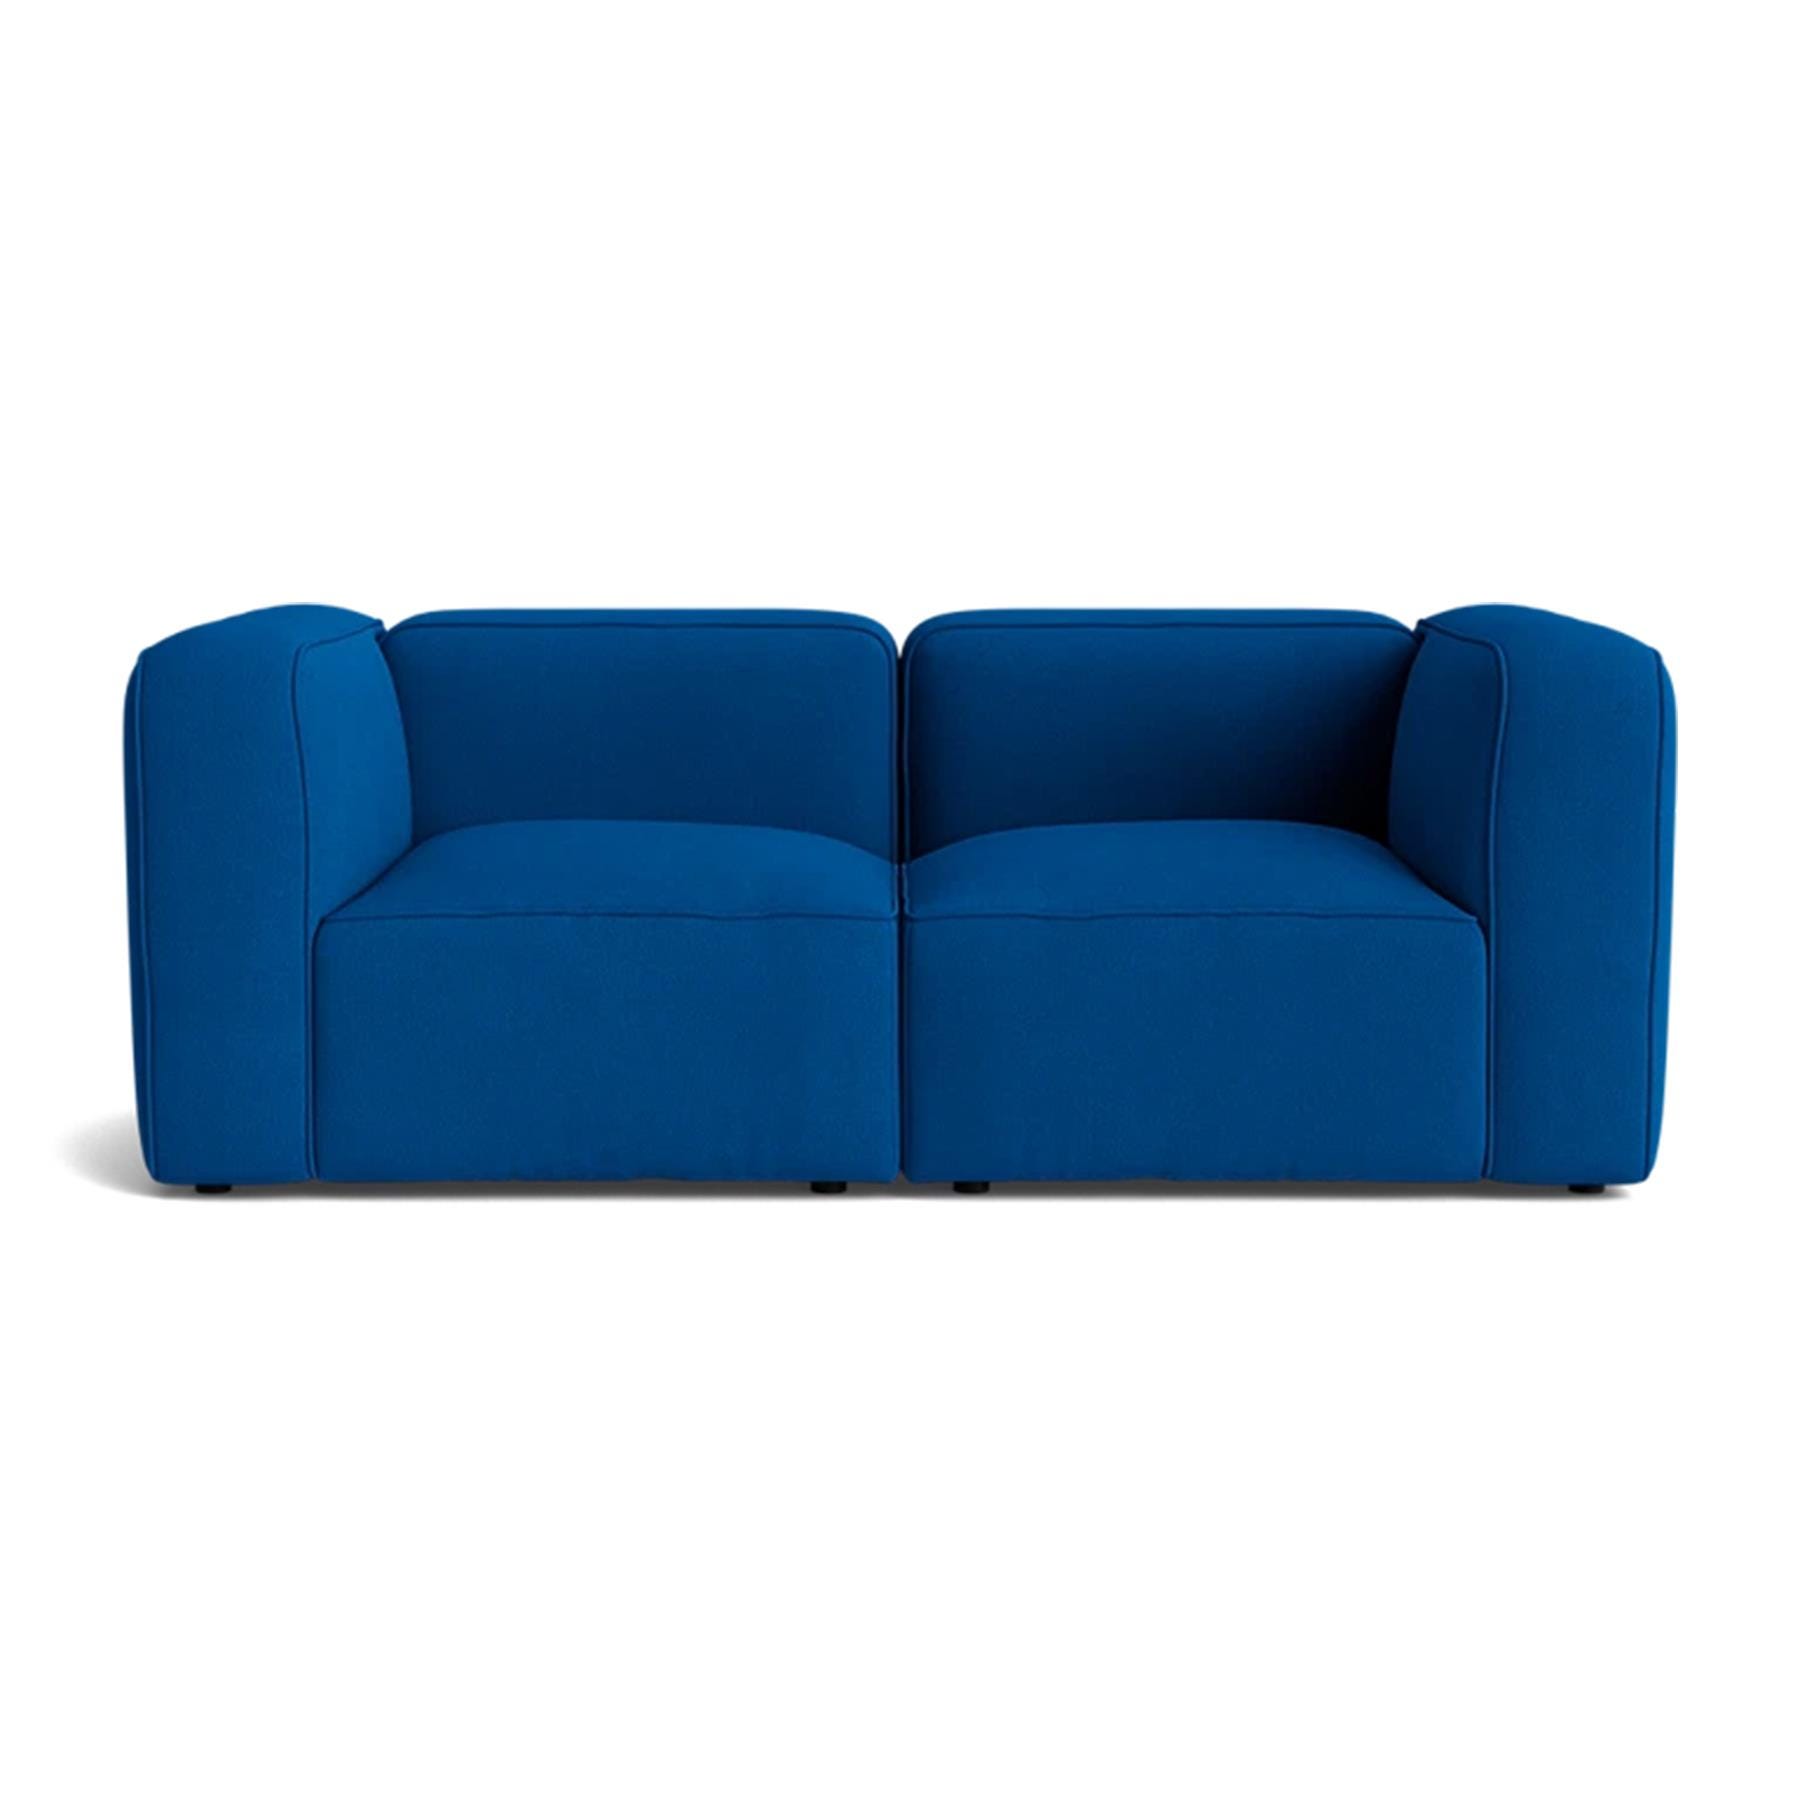 Make Nordic Basecamp 2 Seater Sofa Hallingdal 750 Blue Designer Furniture From Holloways Of Ludlow